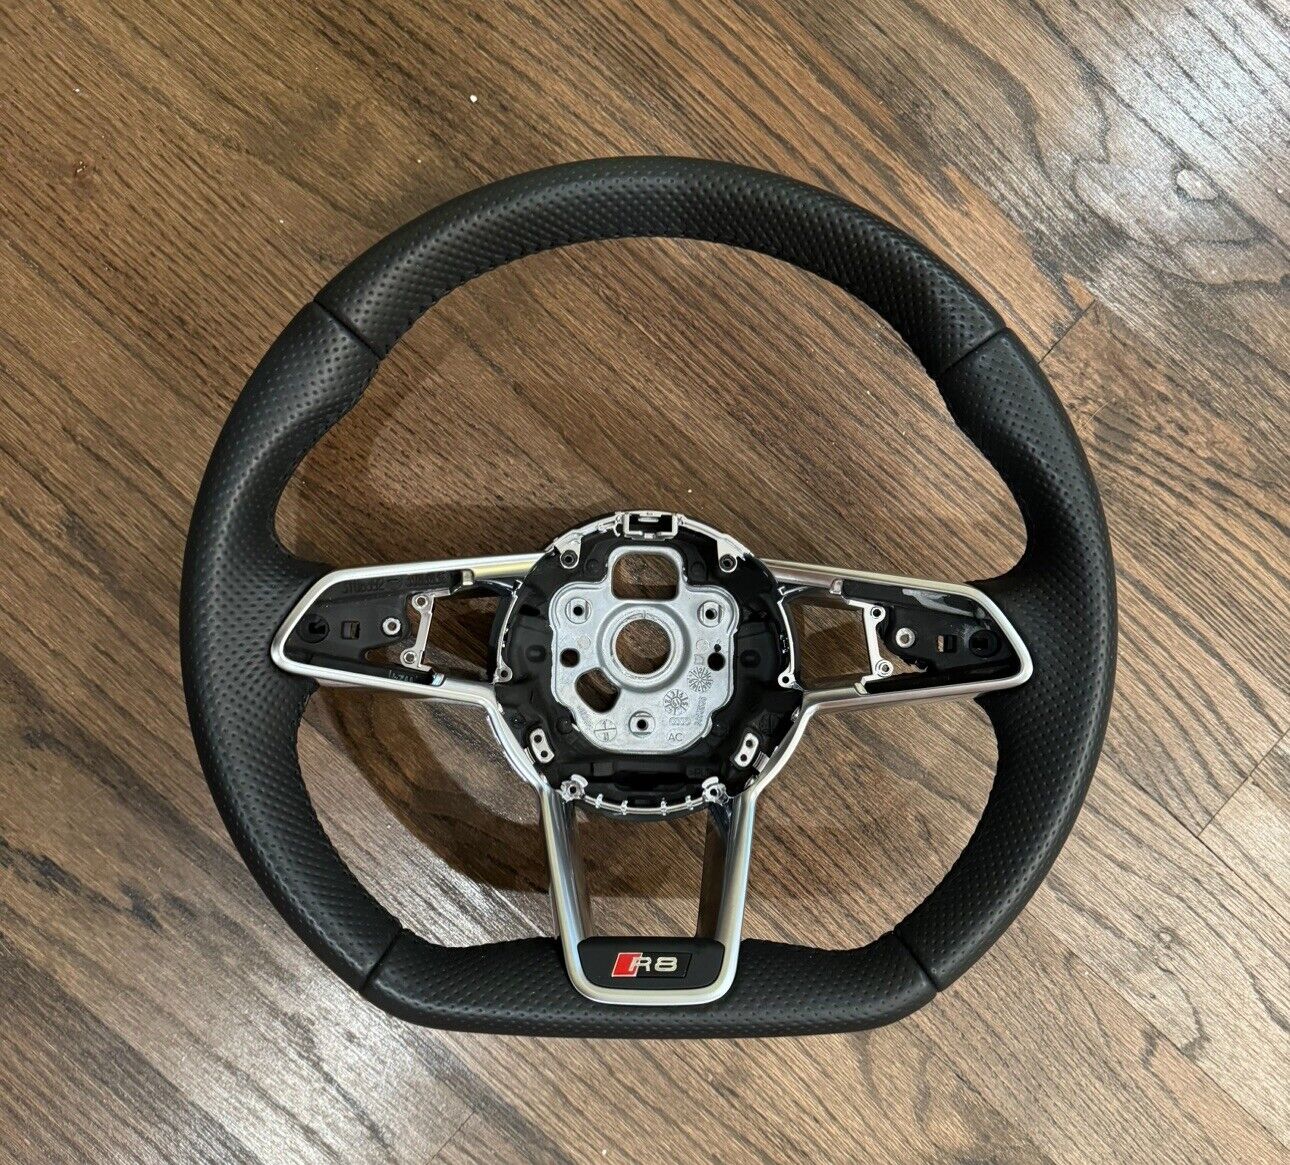 Audi r8 steering wheel 2020